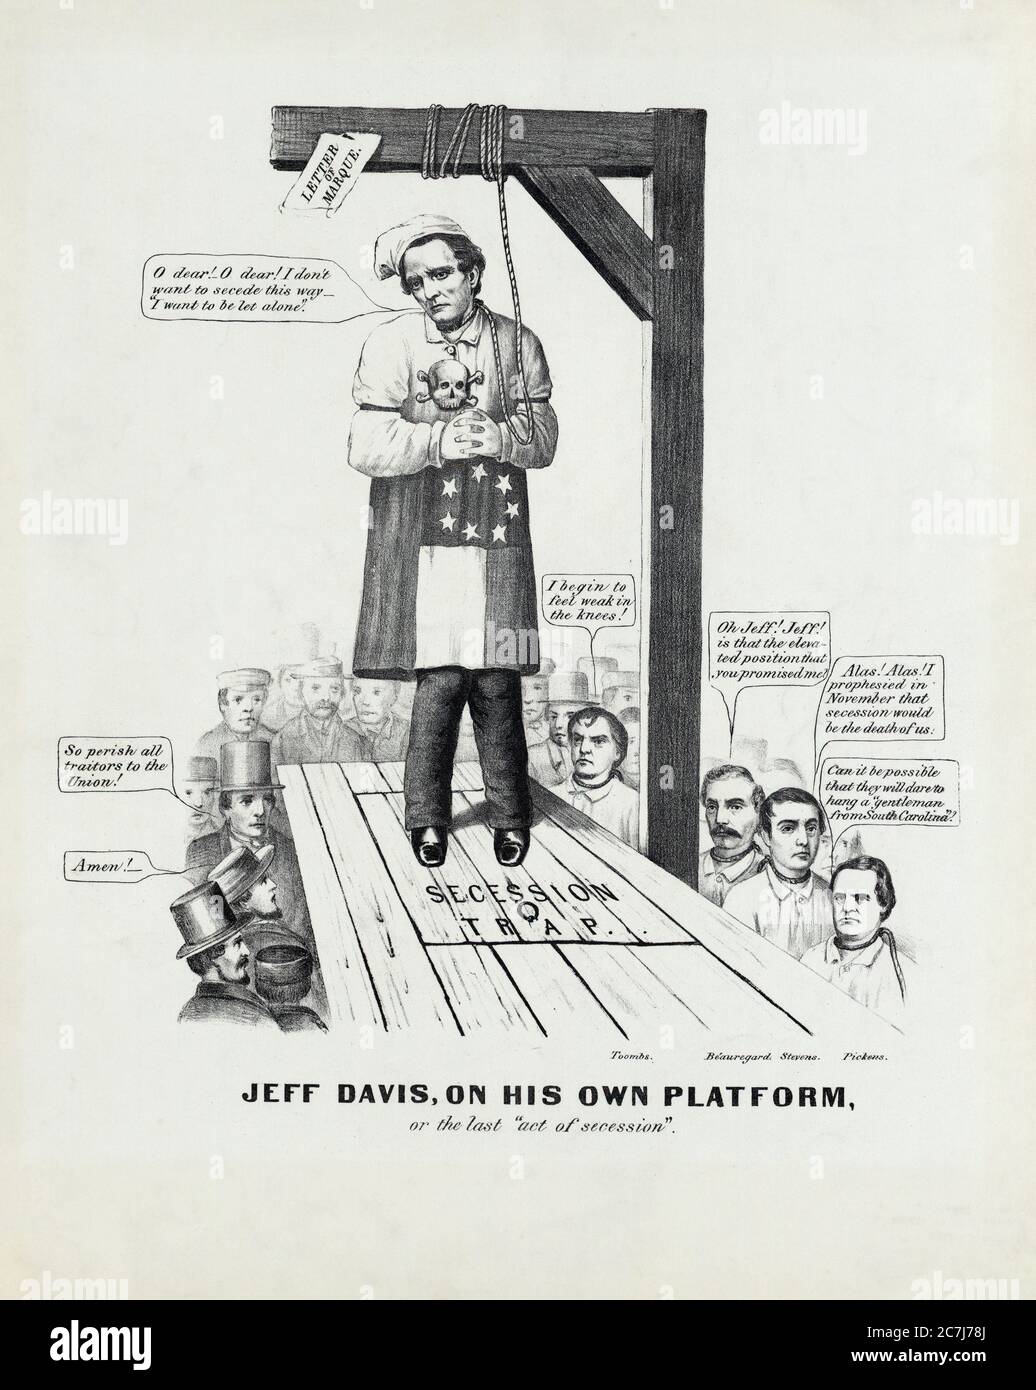 Jeff Davis auf seiner eigenen Plattform; oder der letzte 'Act of Secession' politische Cartoon, Currier & Ives, 1861 Stockfoto